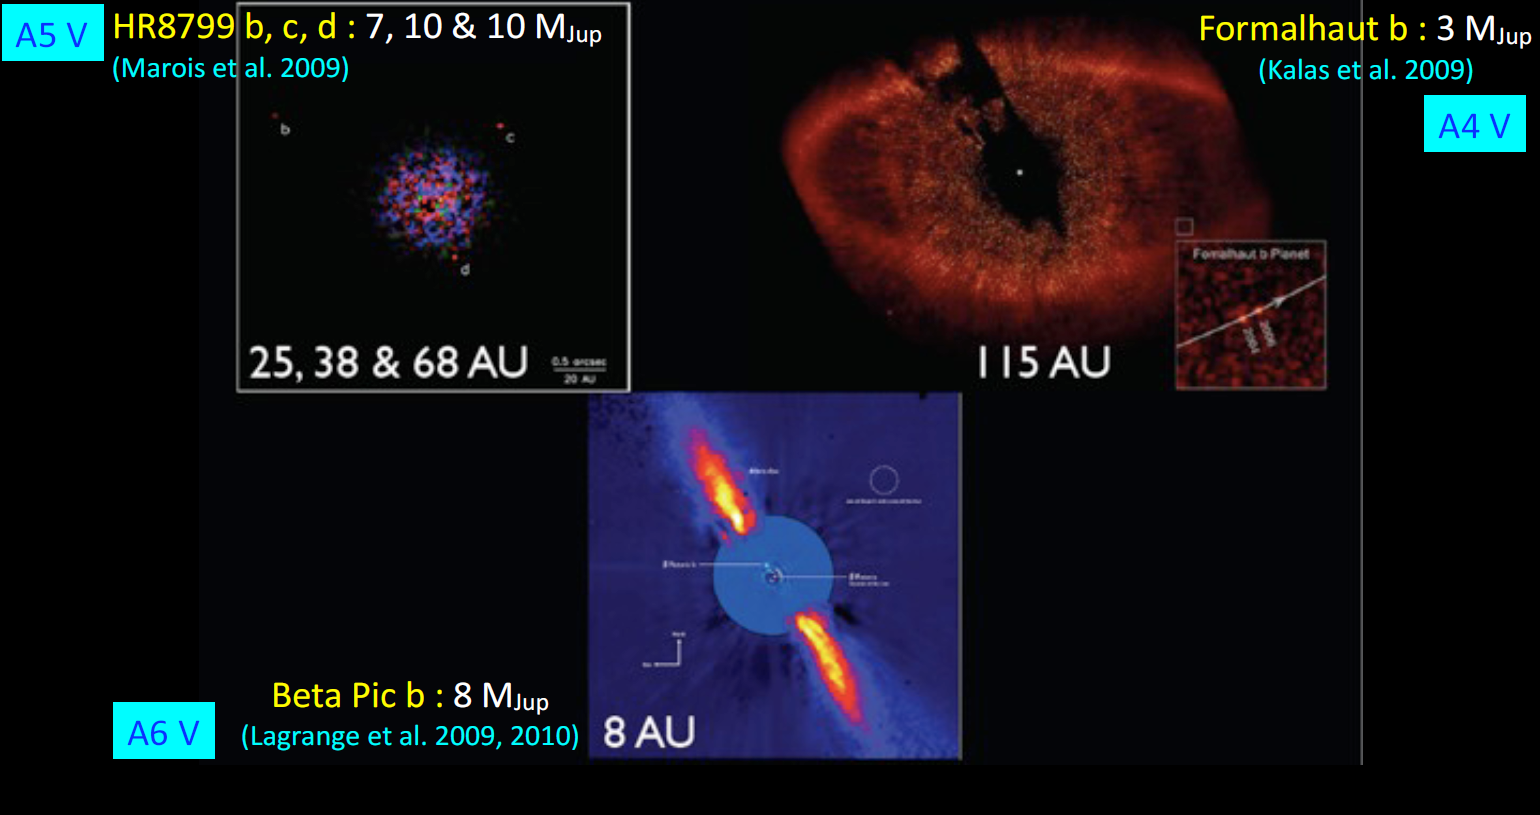 A tayf türünden yıldızlar etrafında doğrudan görüntüleme yöntemiyle gördüğümüz bu diskleri ve büyük kütleli gezegenleri, sönük olan M-cücelerinin etrafında yine aynı teknikle çok daha kolay görmemiz